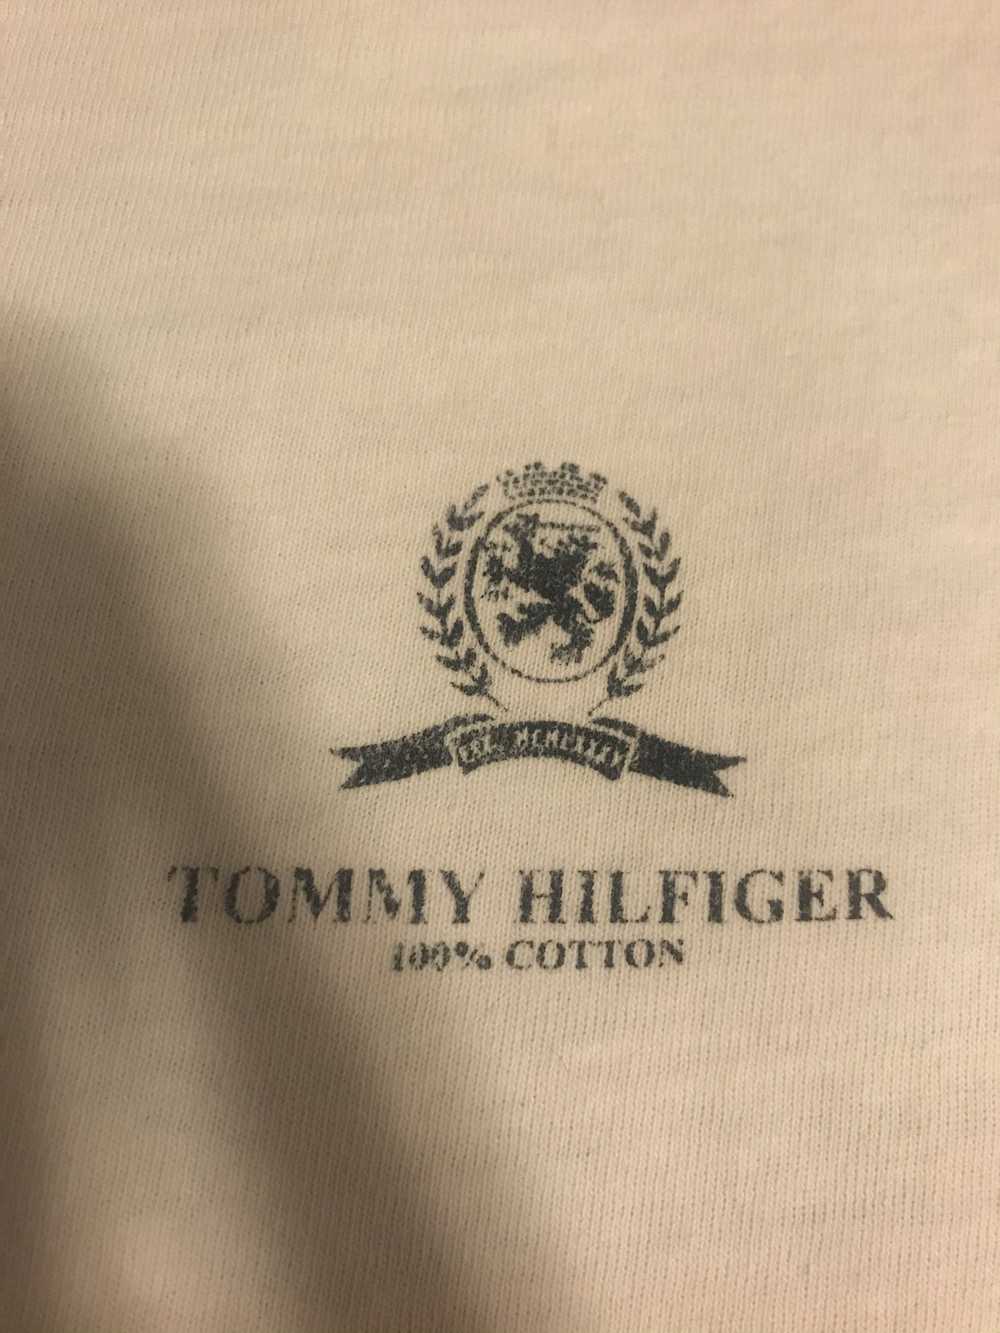 Tommy Hilfiger Tommy Hilfiger Vintage Shirt - image 2